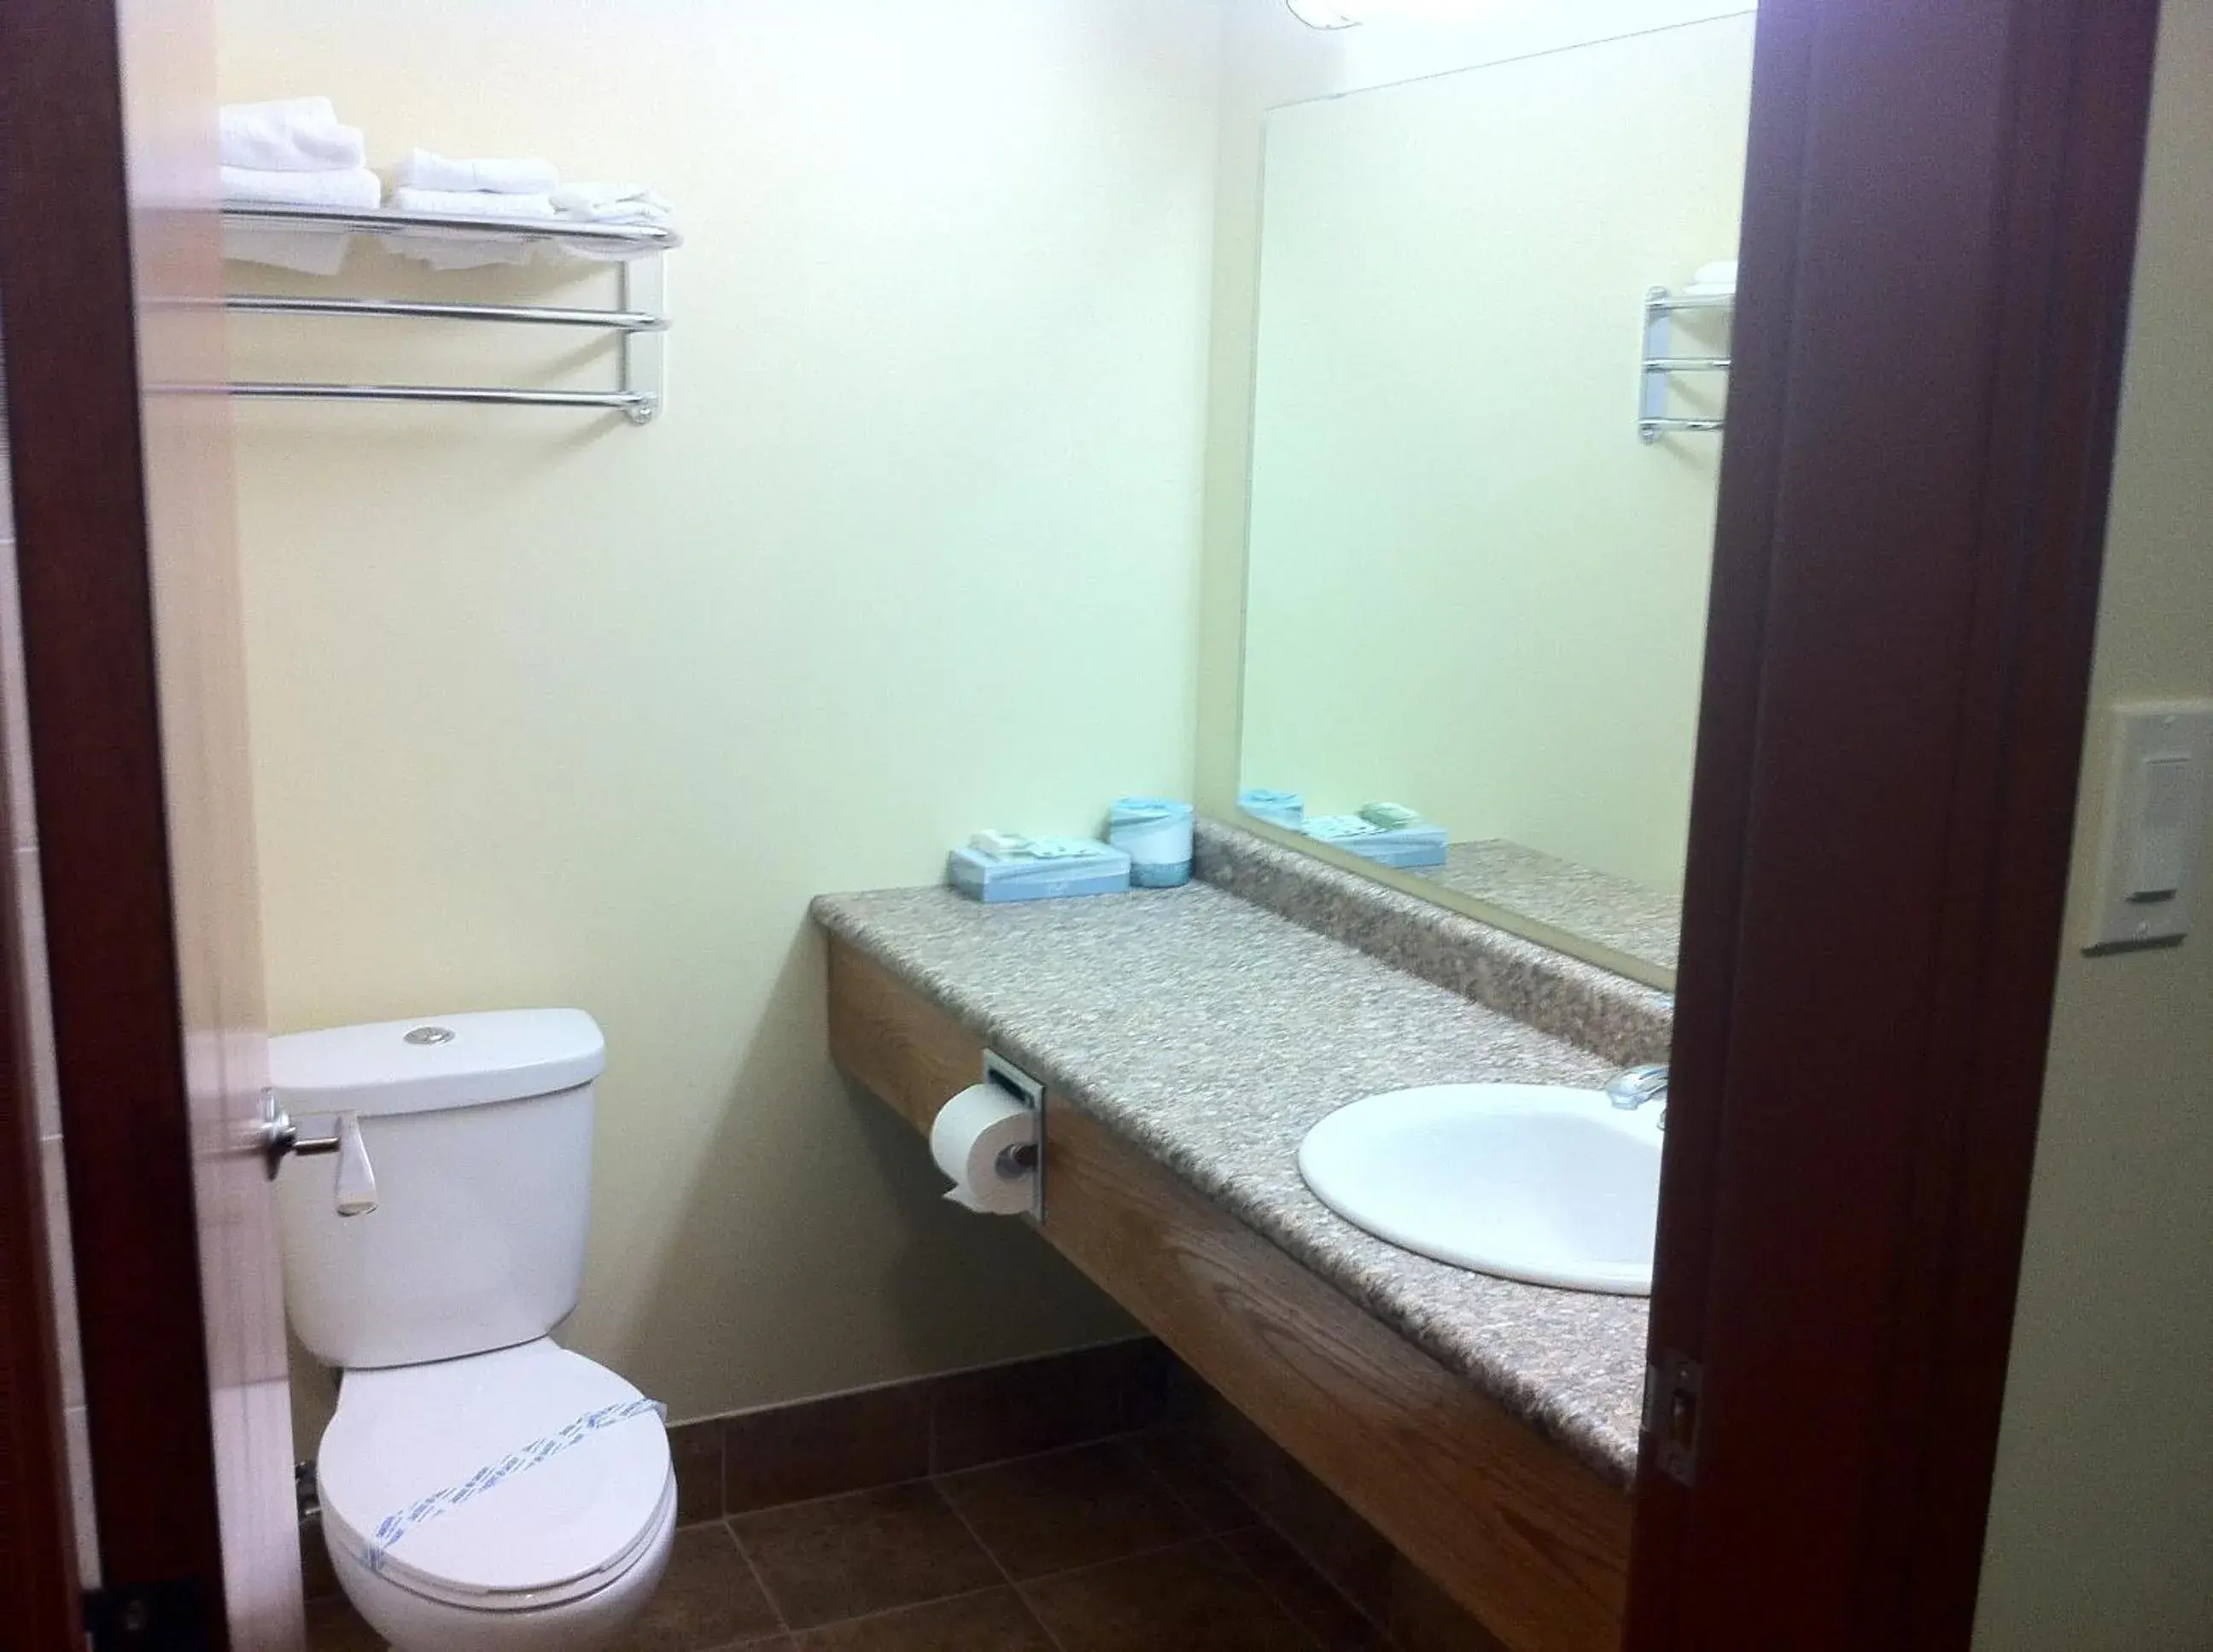 Bathroom in Circle 6 Motel